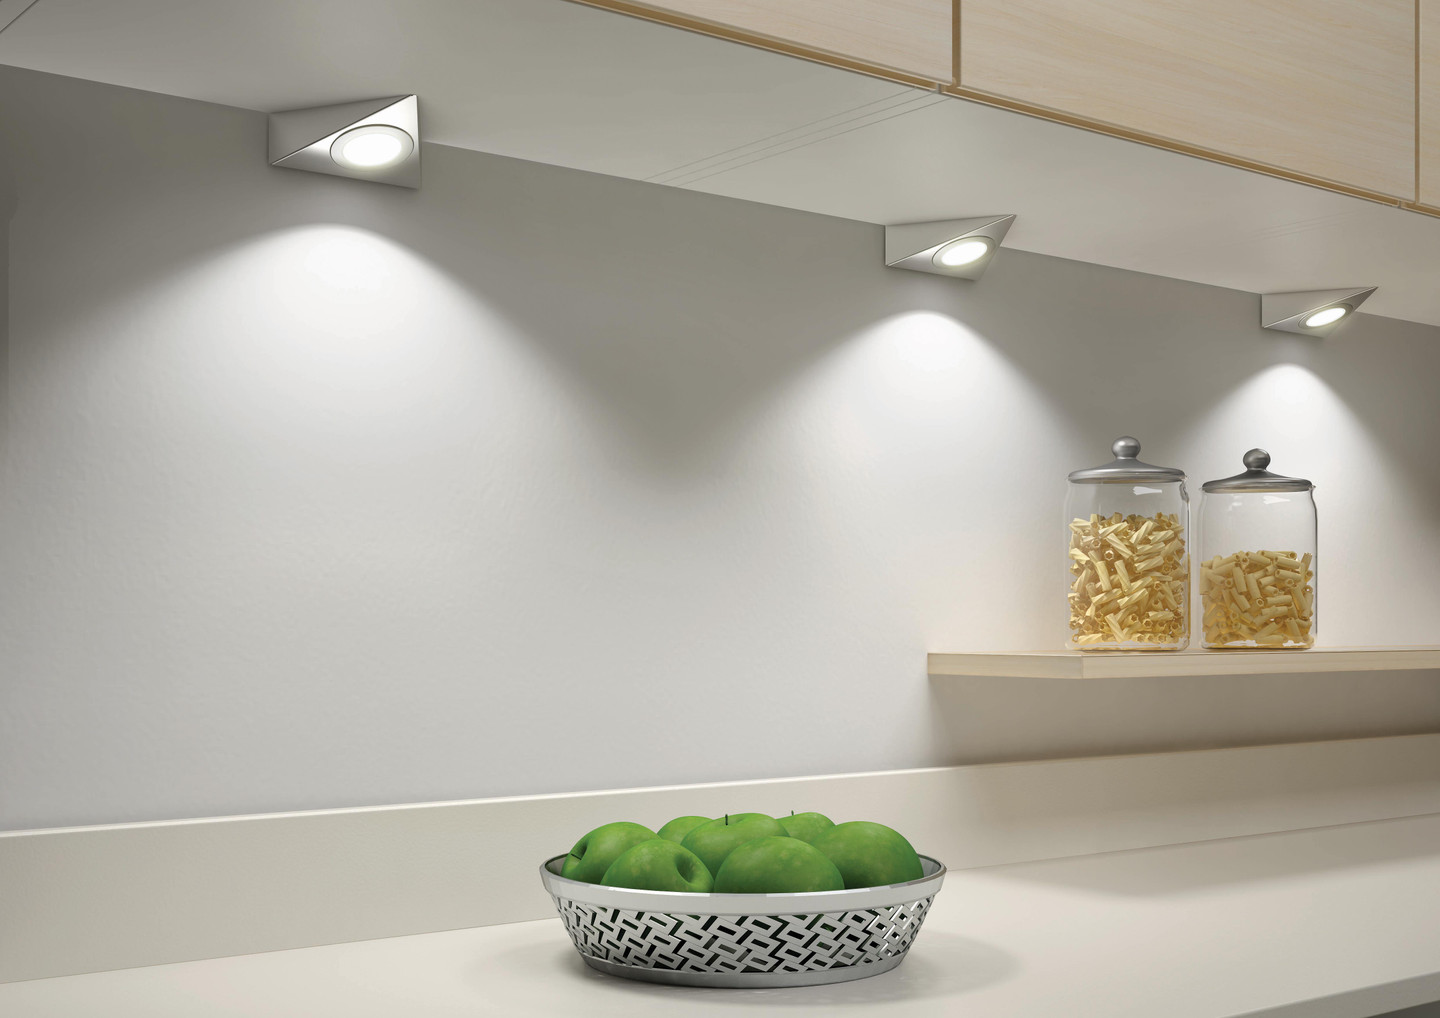 Kit 3 spots LED triangulaire avec convertisseur - Accessoires cuisines -  Accessoires cuisines